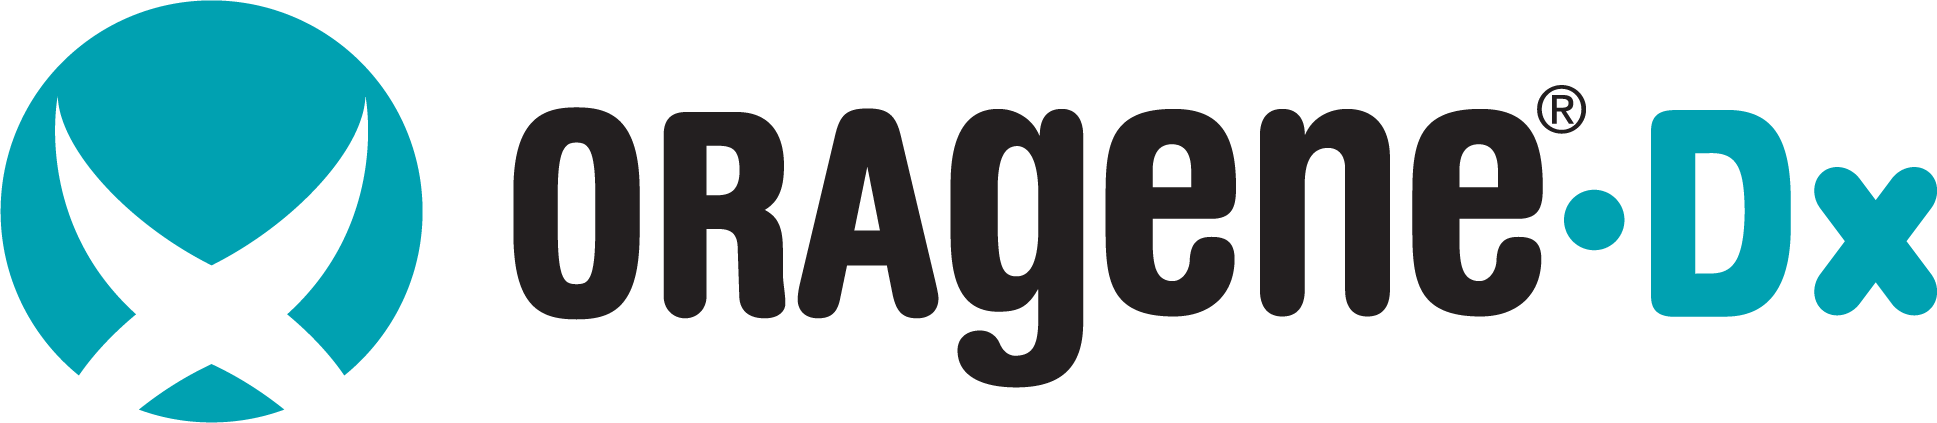 Oragene-Discover-logo